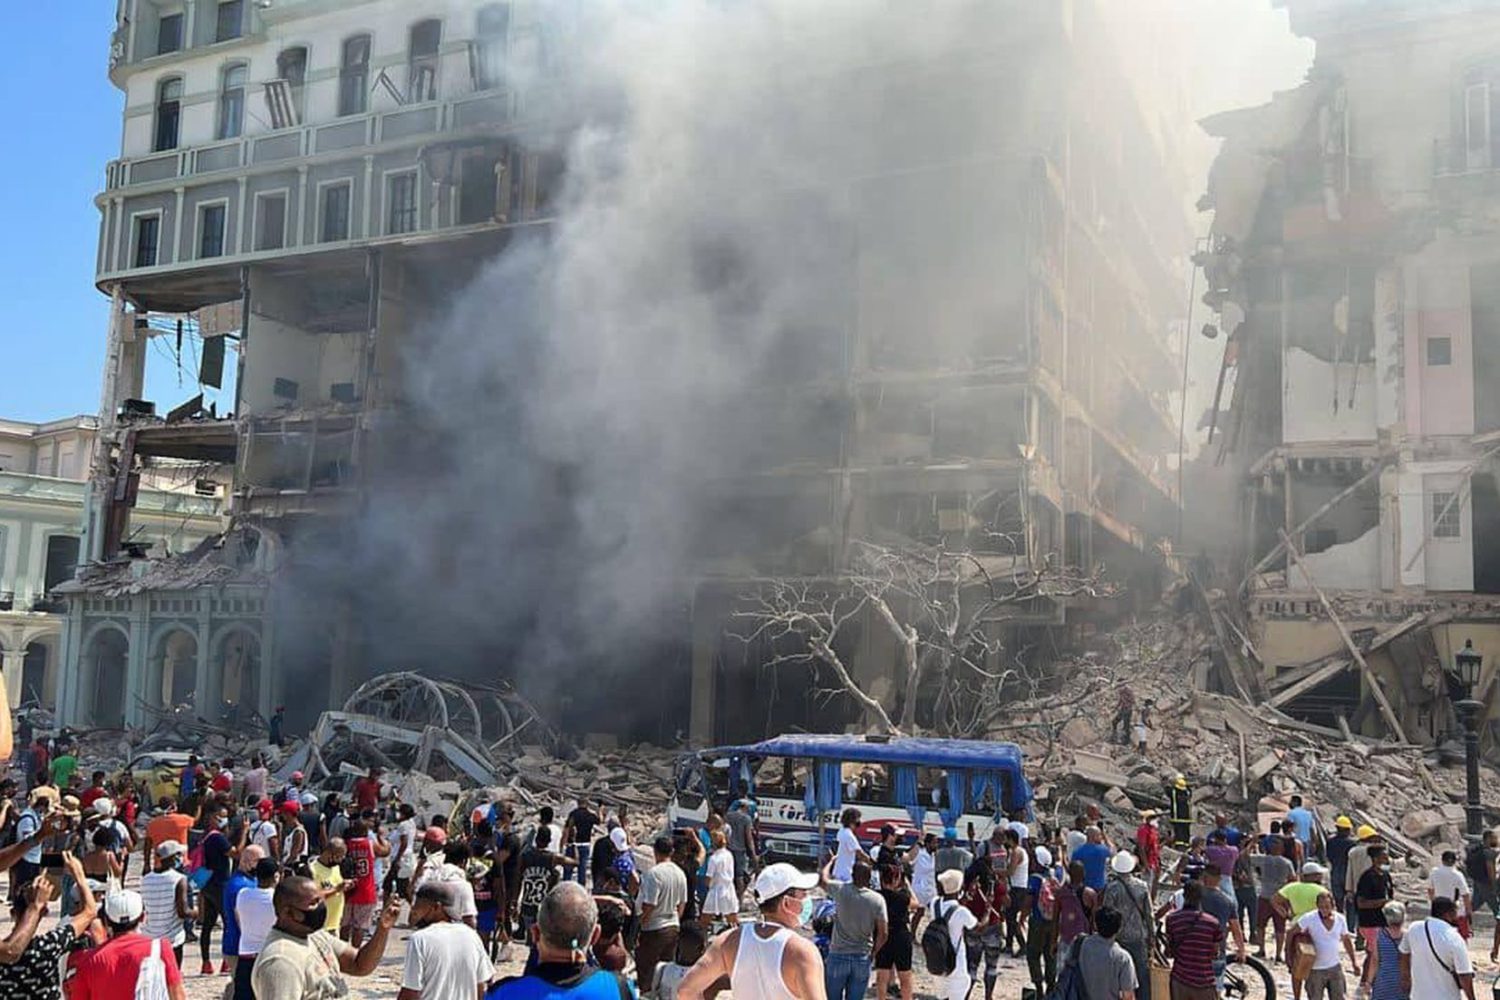 Sube a 25 los fallecidos tras la explosión de un hotel en La Habana, Cuba